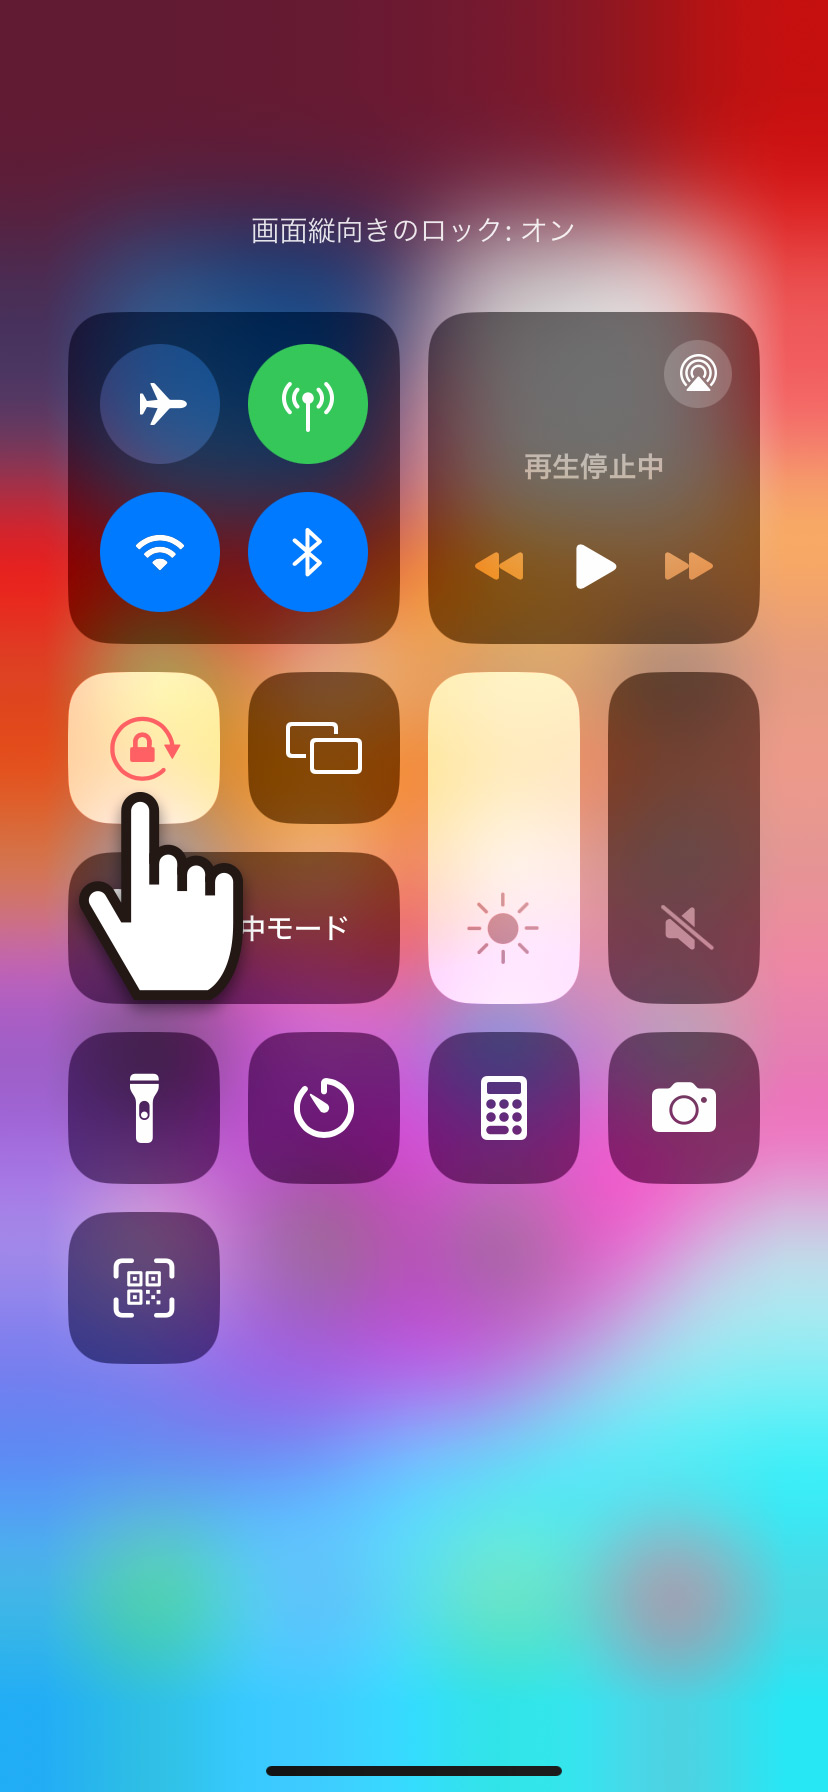 【iPhone】画面を縦方向に固定・解除する方法